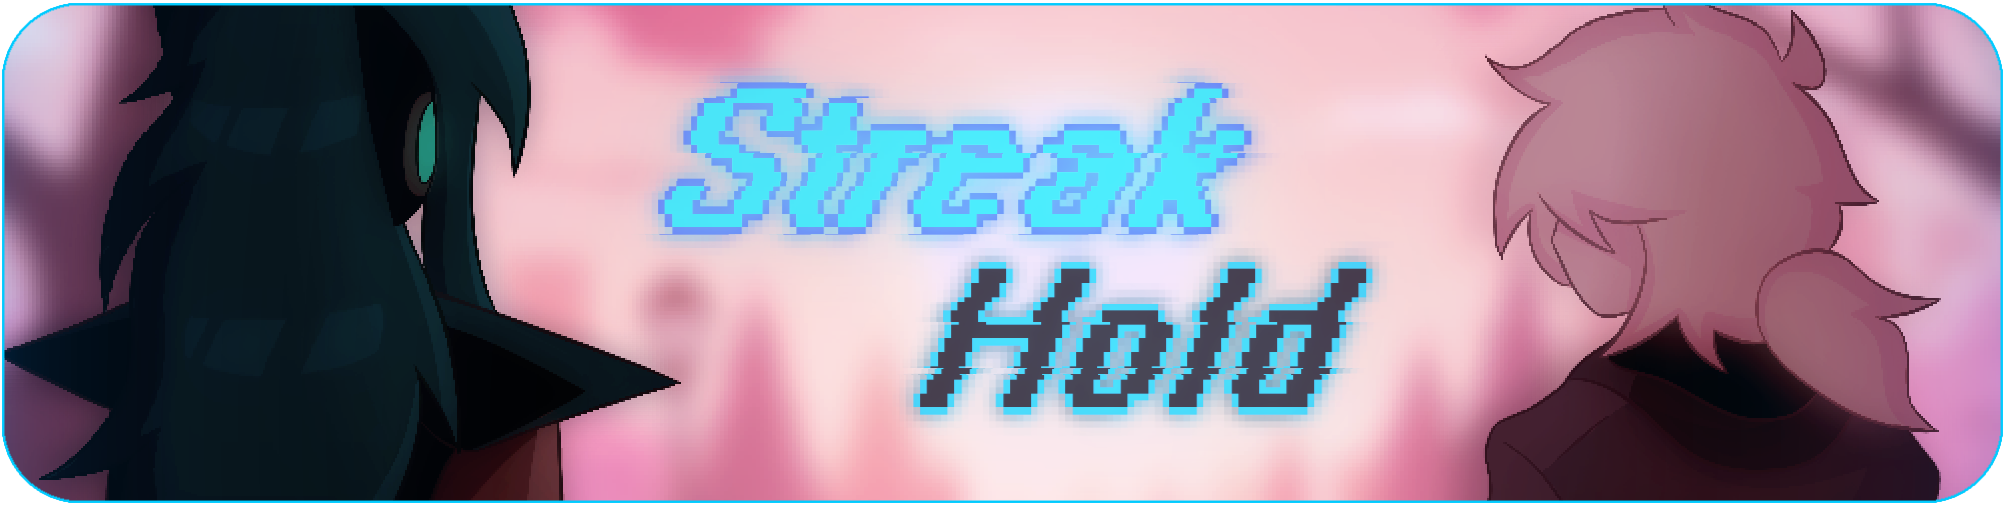 StreakHold [DEMO]